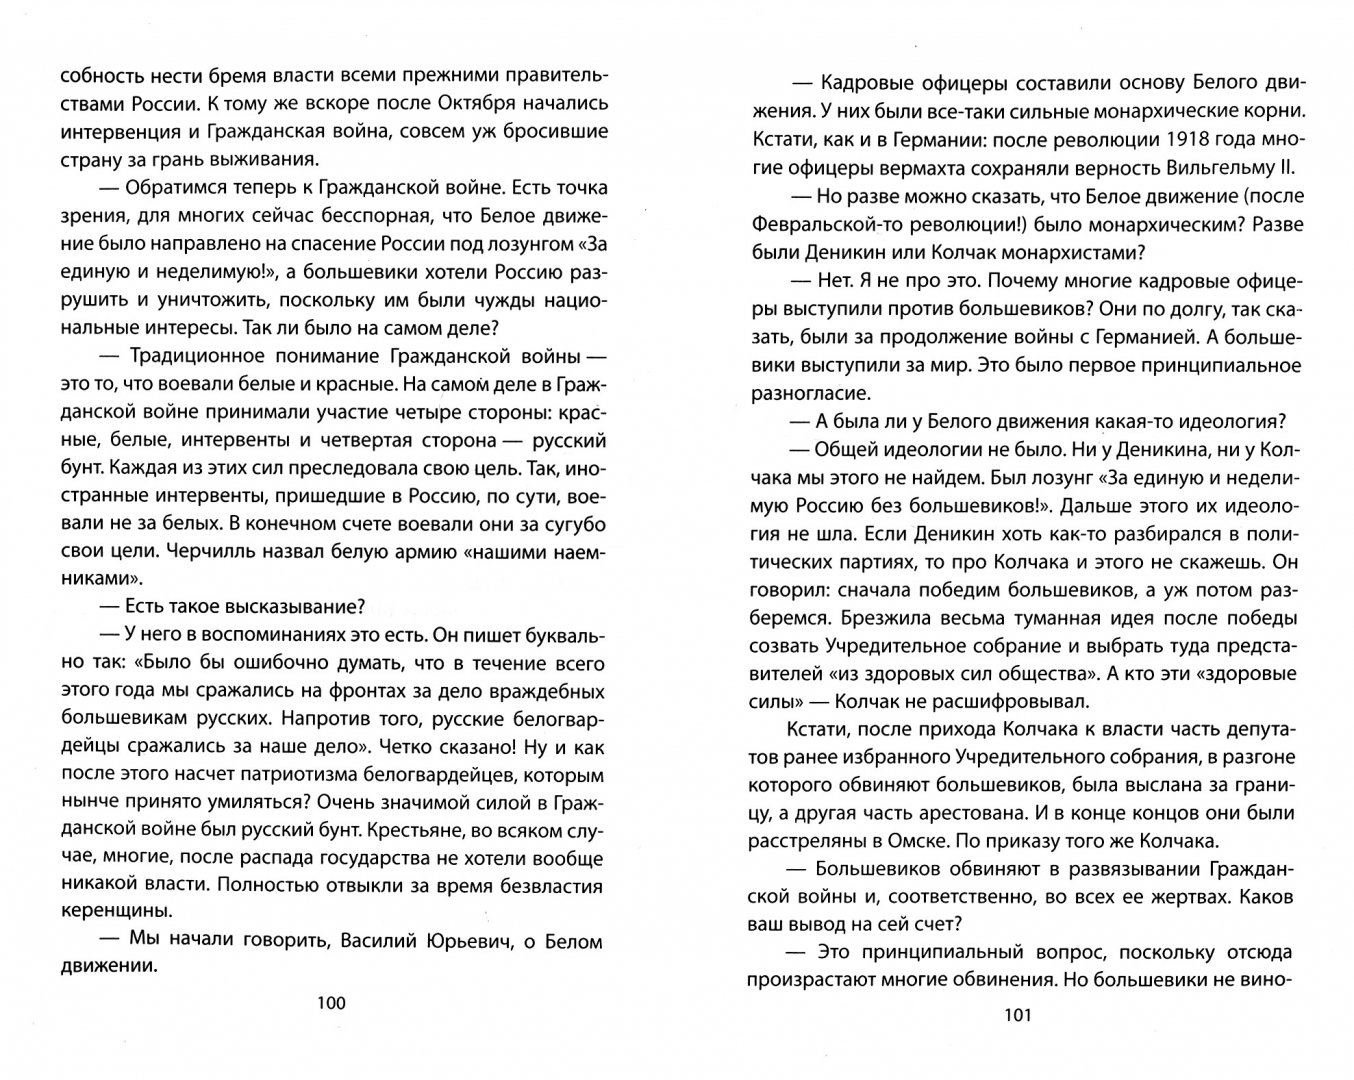 Иллюстрация 1 из 4 для Ленин и революция - Суходеев, Бушин, Кожемяко | Лабиринт - книги. Источник: Лабиринт